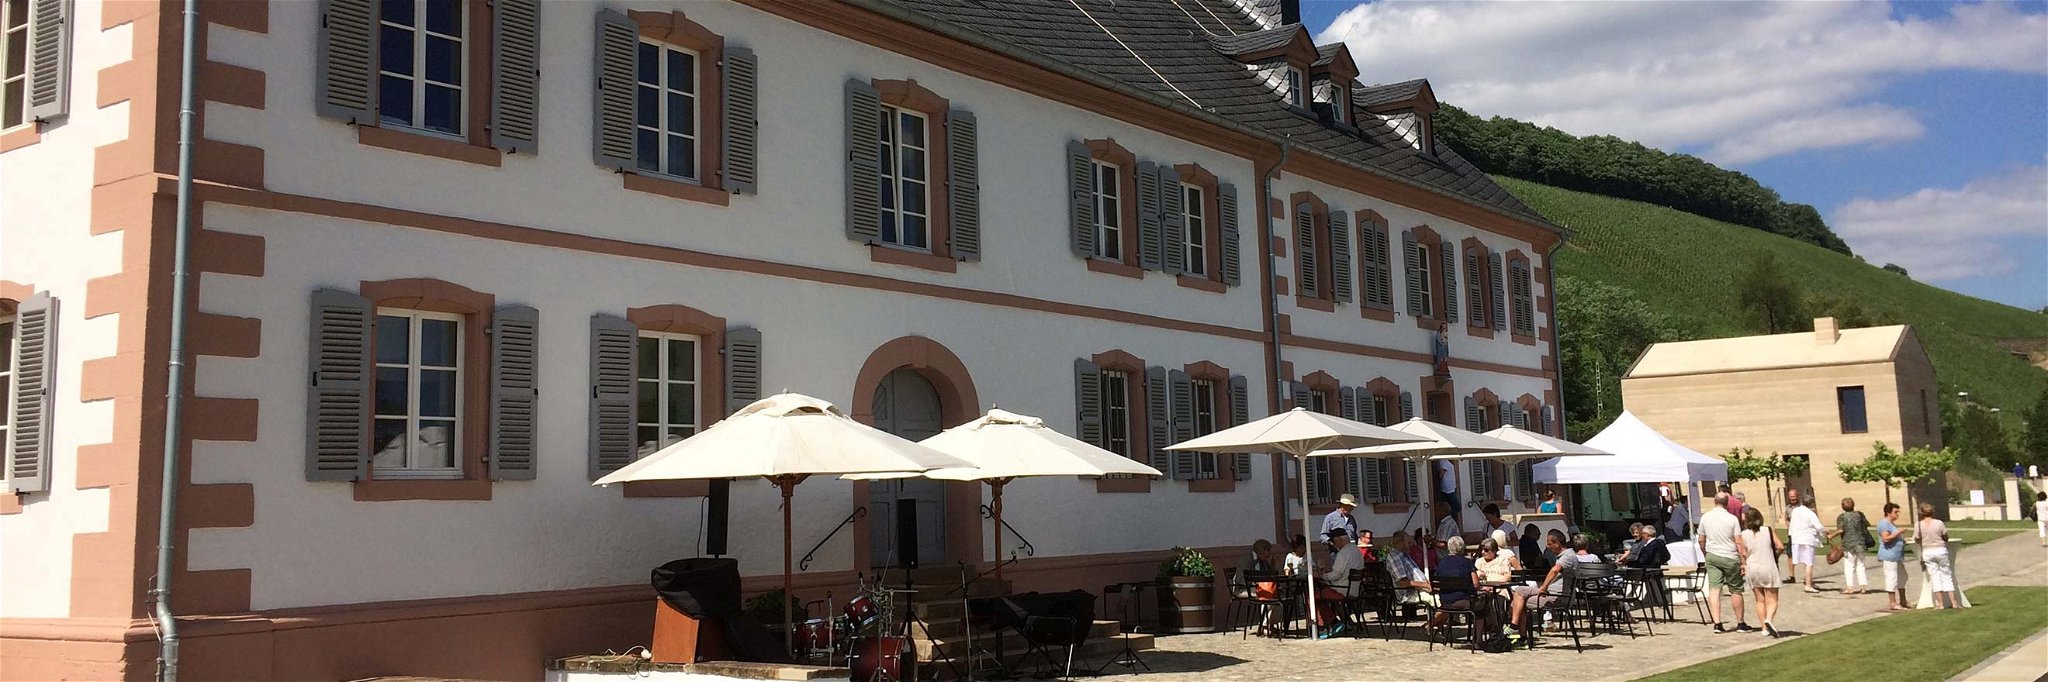 Auch das Gästehaus und Weingut Cantzheim in Kanzem ist Teil des »SaaRieslingSommer 2017«.